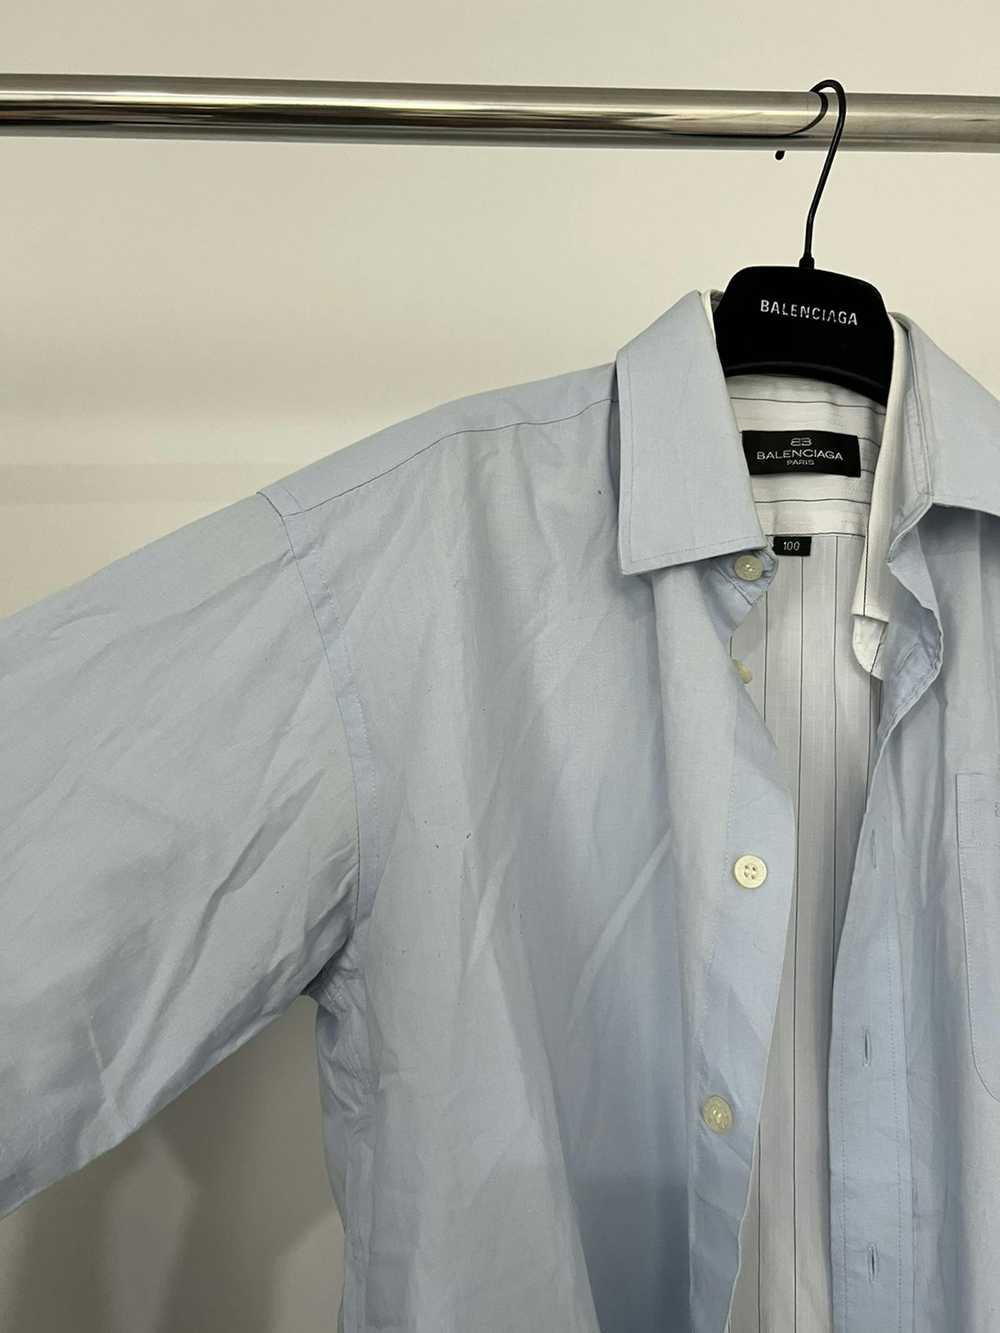 Balenciaga Balenciaga Hybrid Double Layer Shirt - image 2